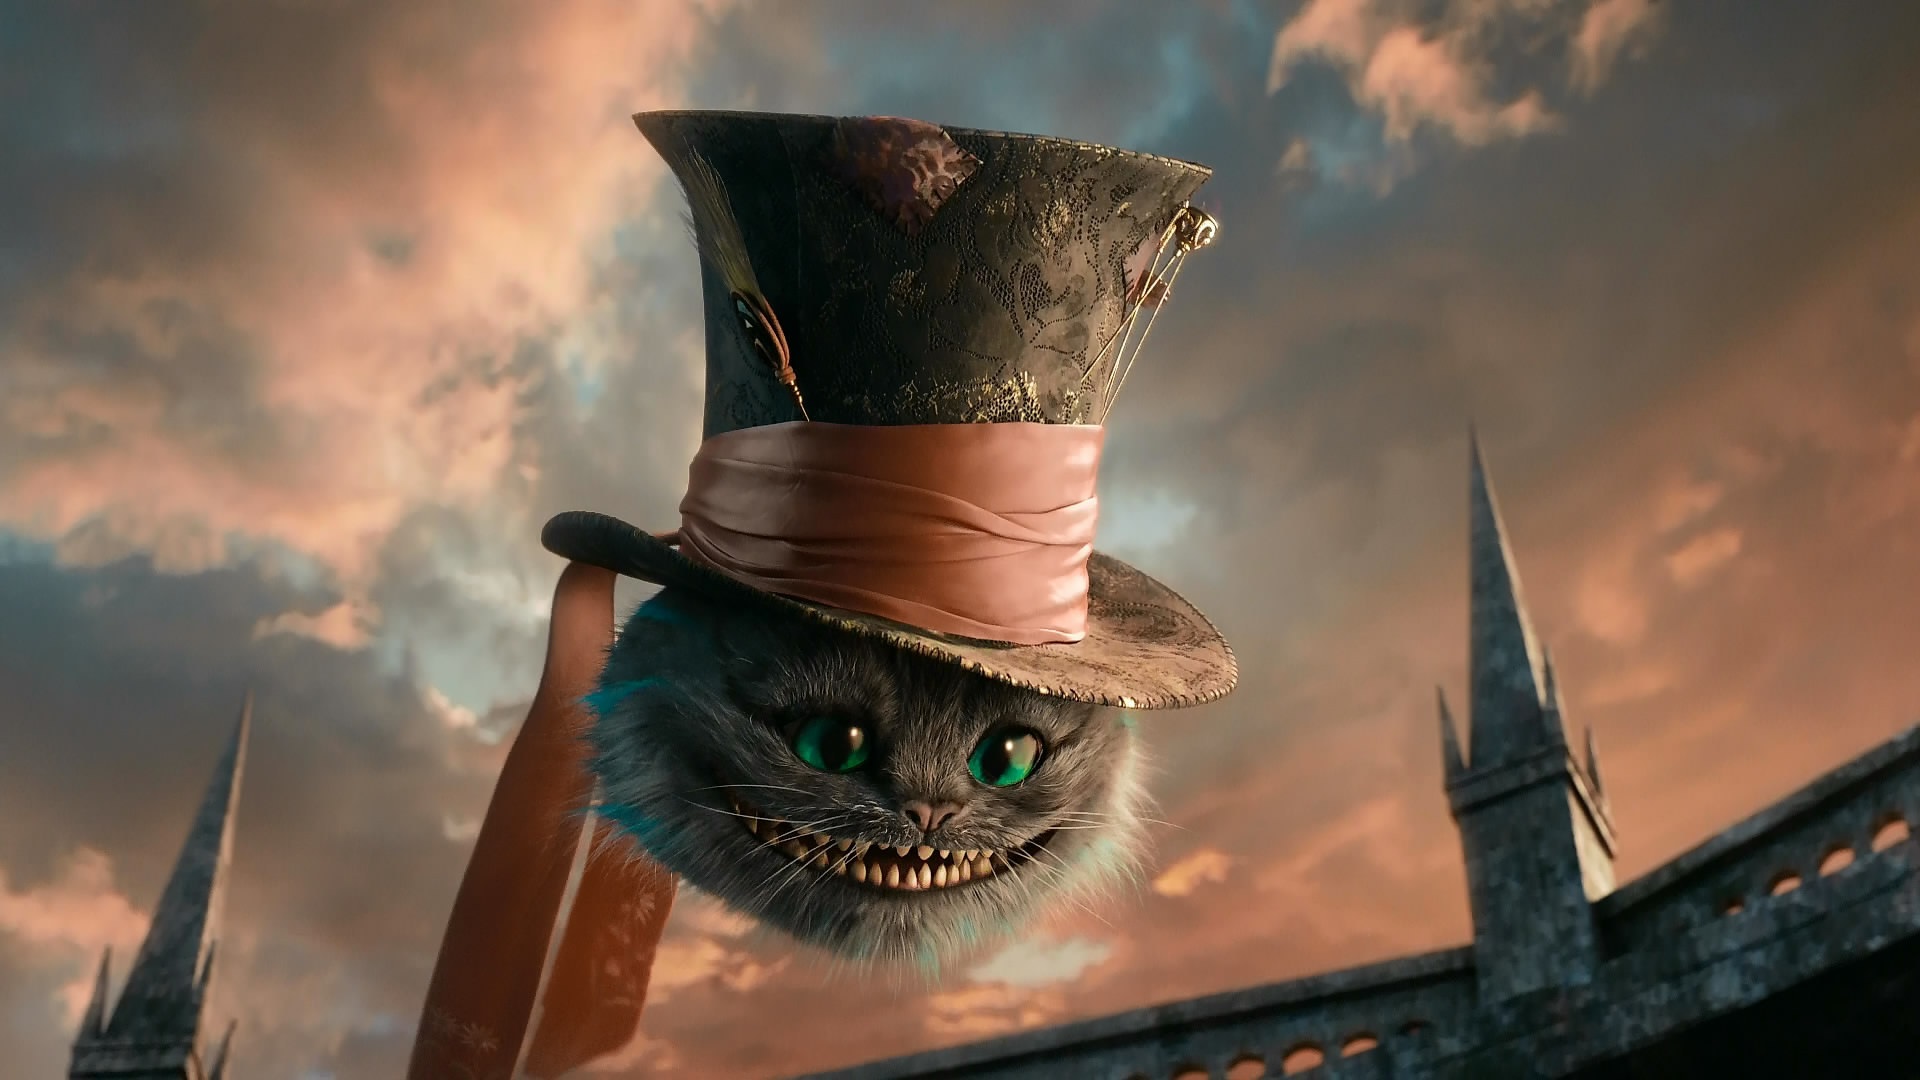 Cheshire Cat Alice In Wonderland Desktop Wallpaper Image Gallery